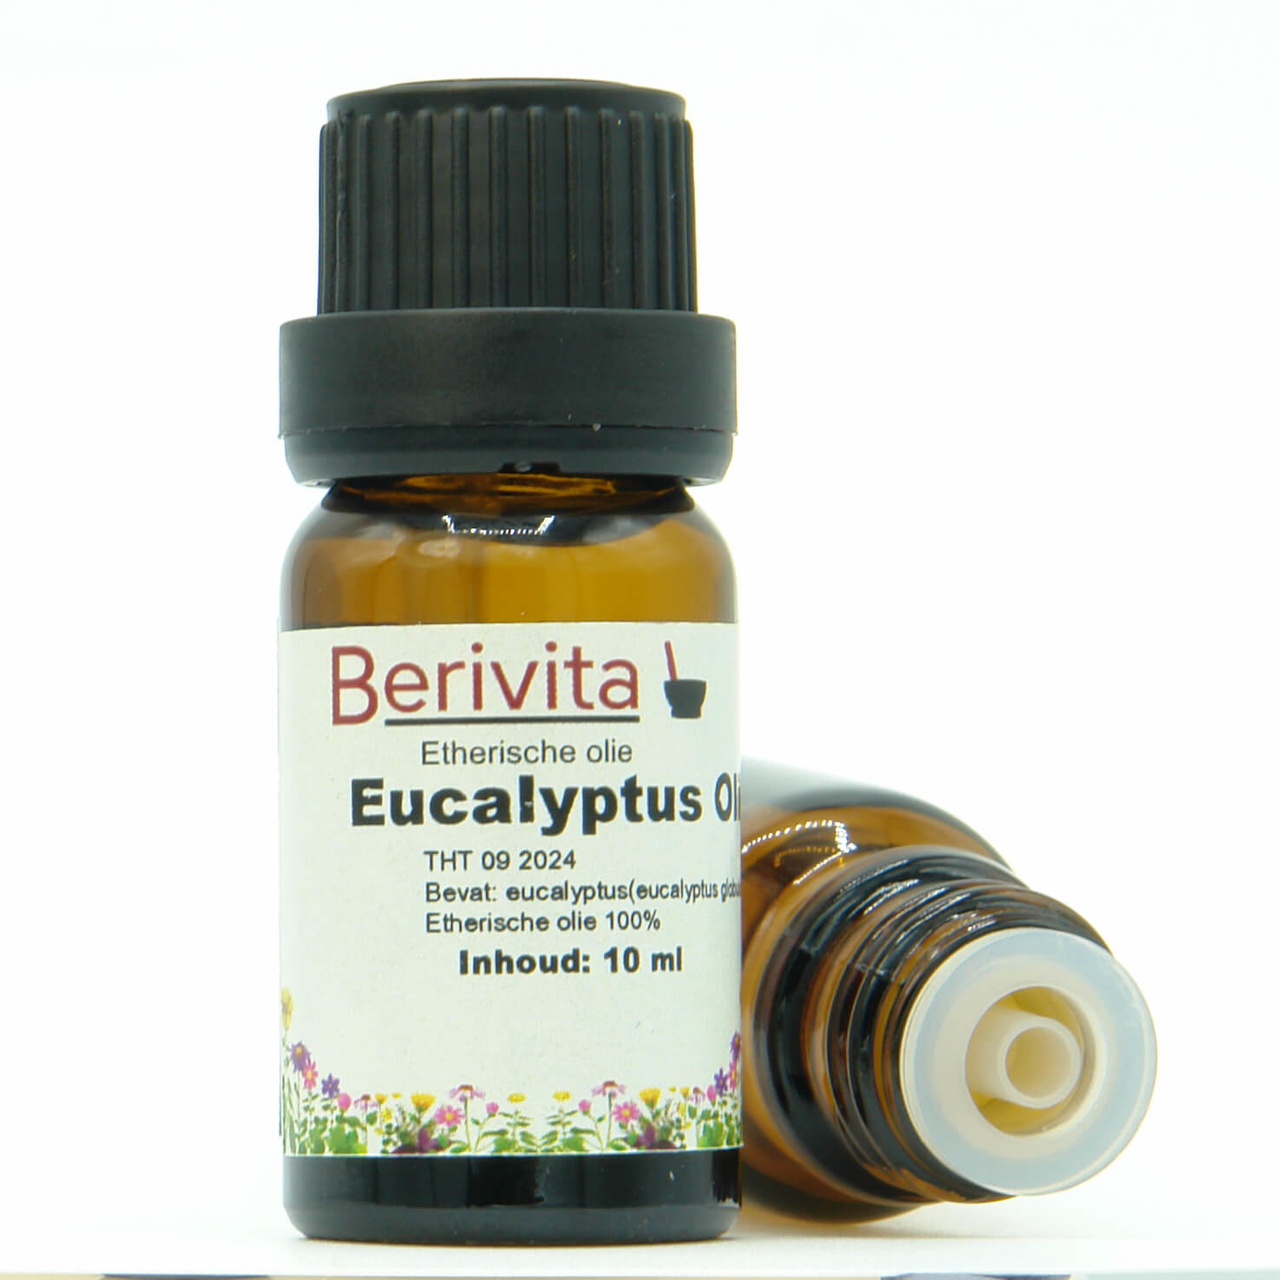 hek Luidruchtig iets Eucalyptusolie 100% PUUR in handige druppelfles. Krachtige etherische olie  - BeriVita.com - Natuurlijk & Puur